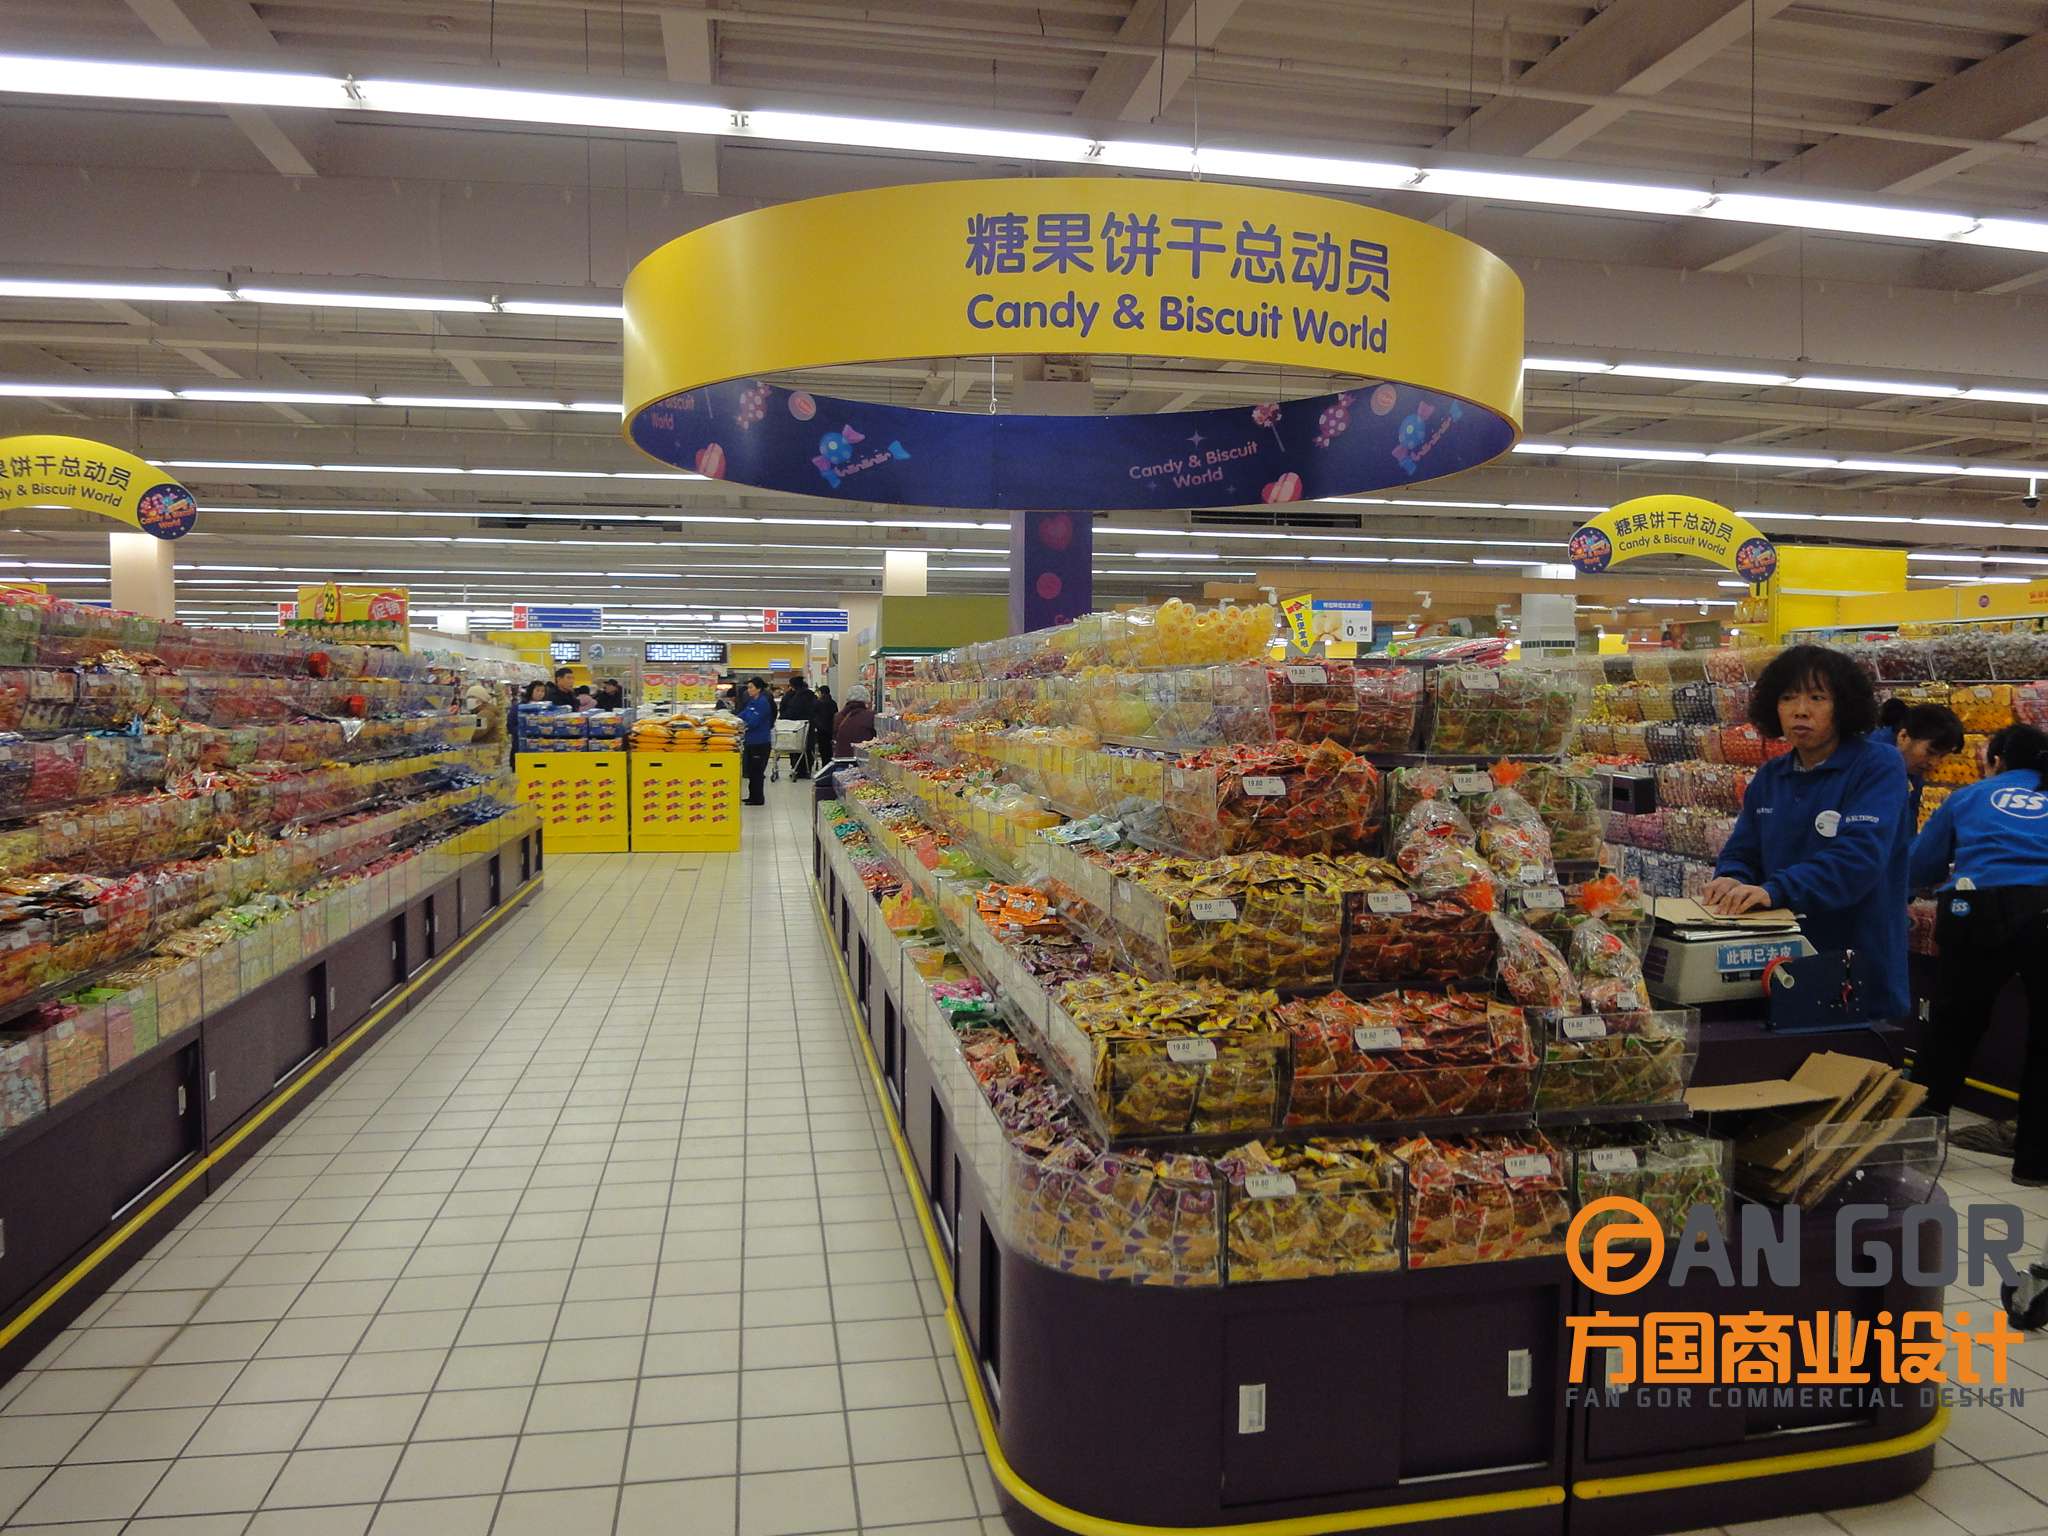 乐购超市 - 上海方国商务咨询管理有限公司